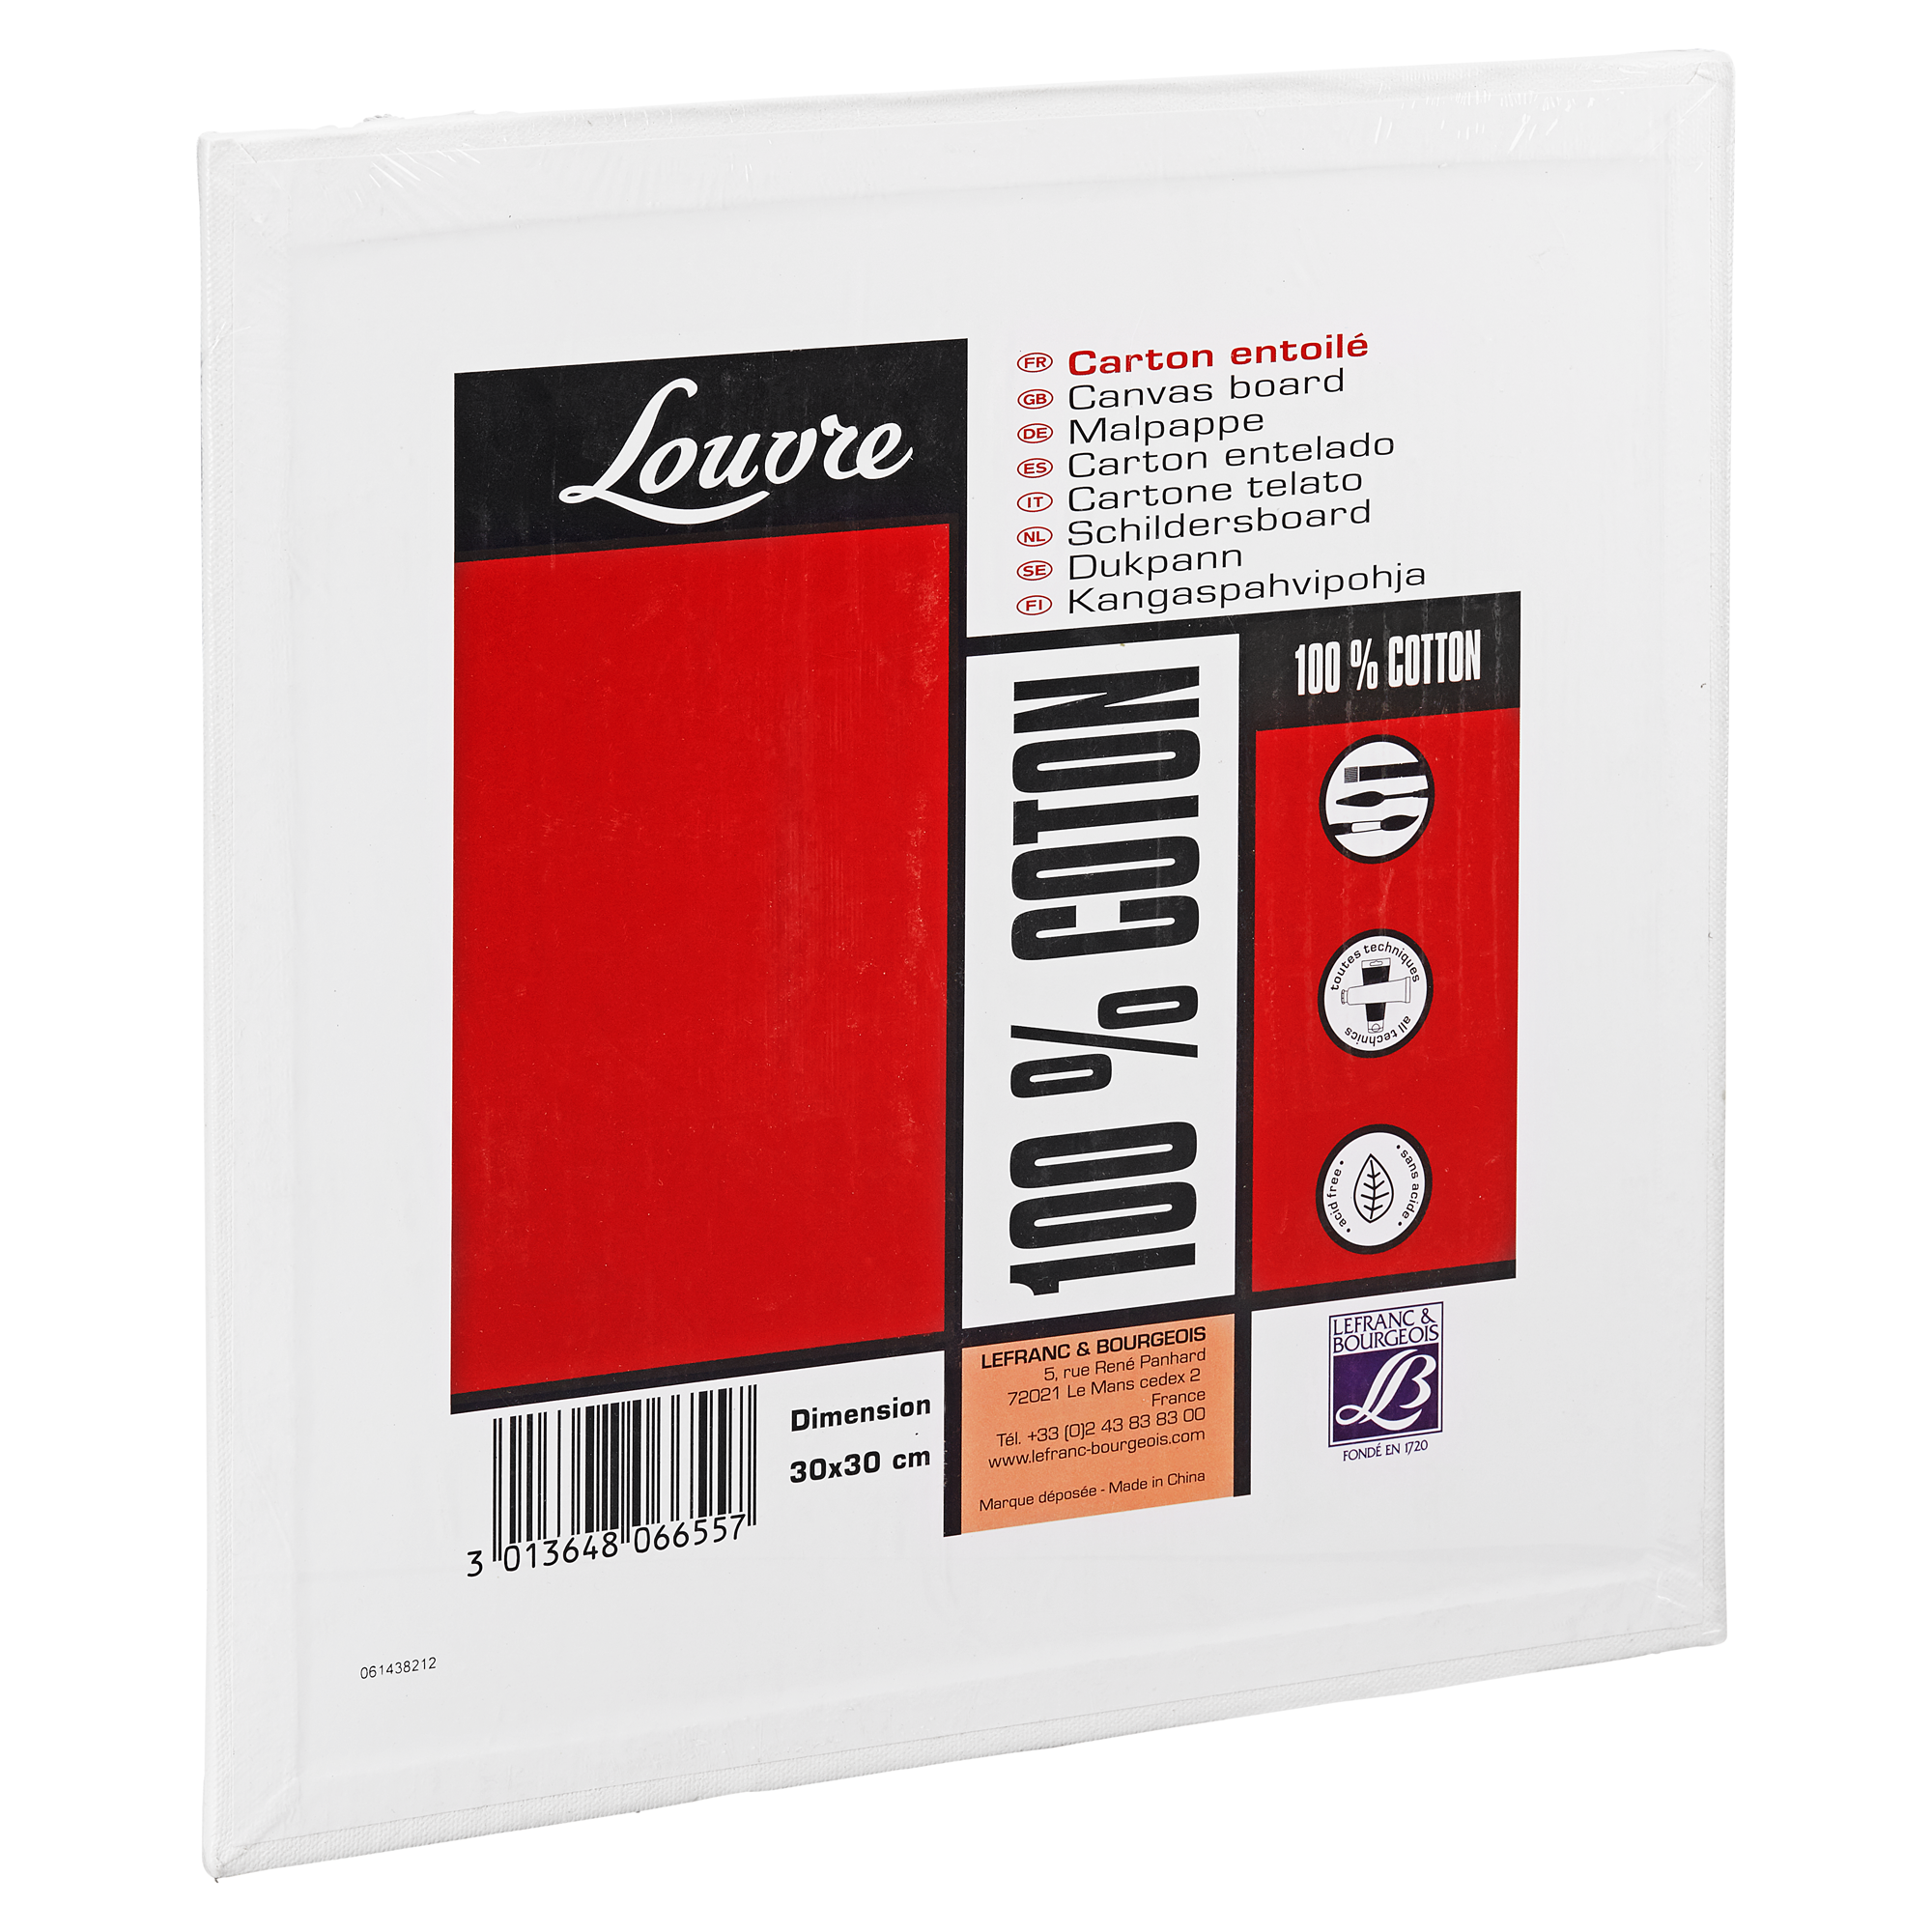 Malpappe "Louvre" Karton baumwollbespannt weiß 30 x 30 cm + product picture